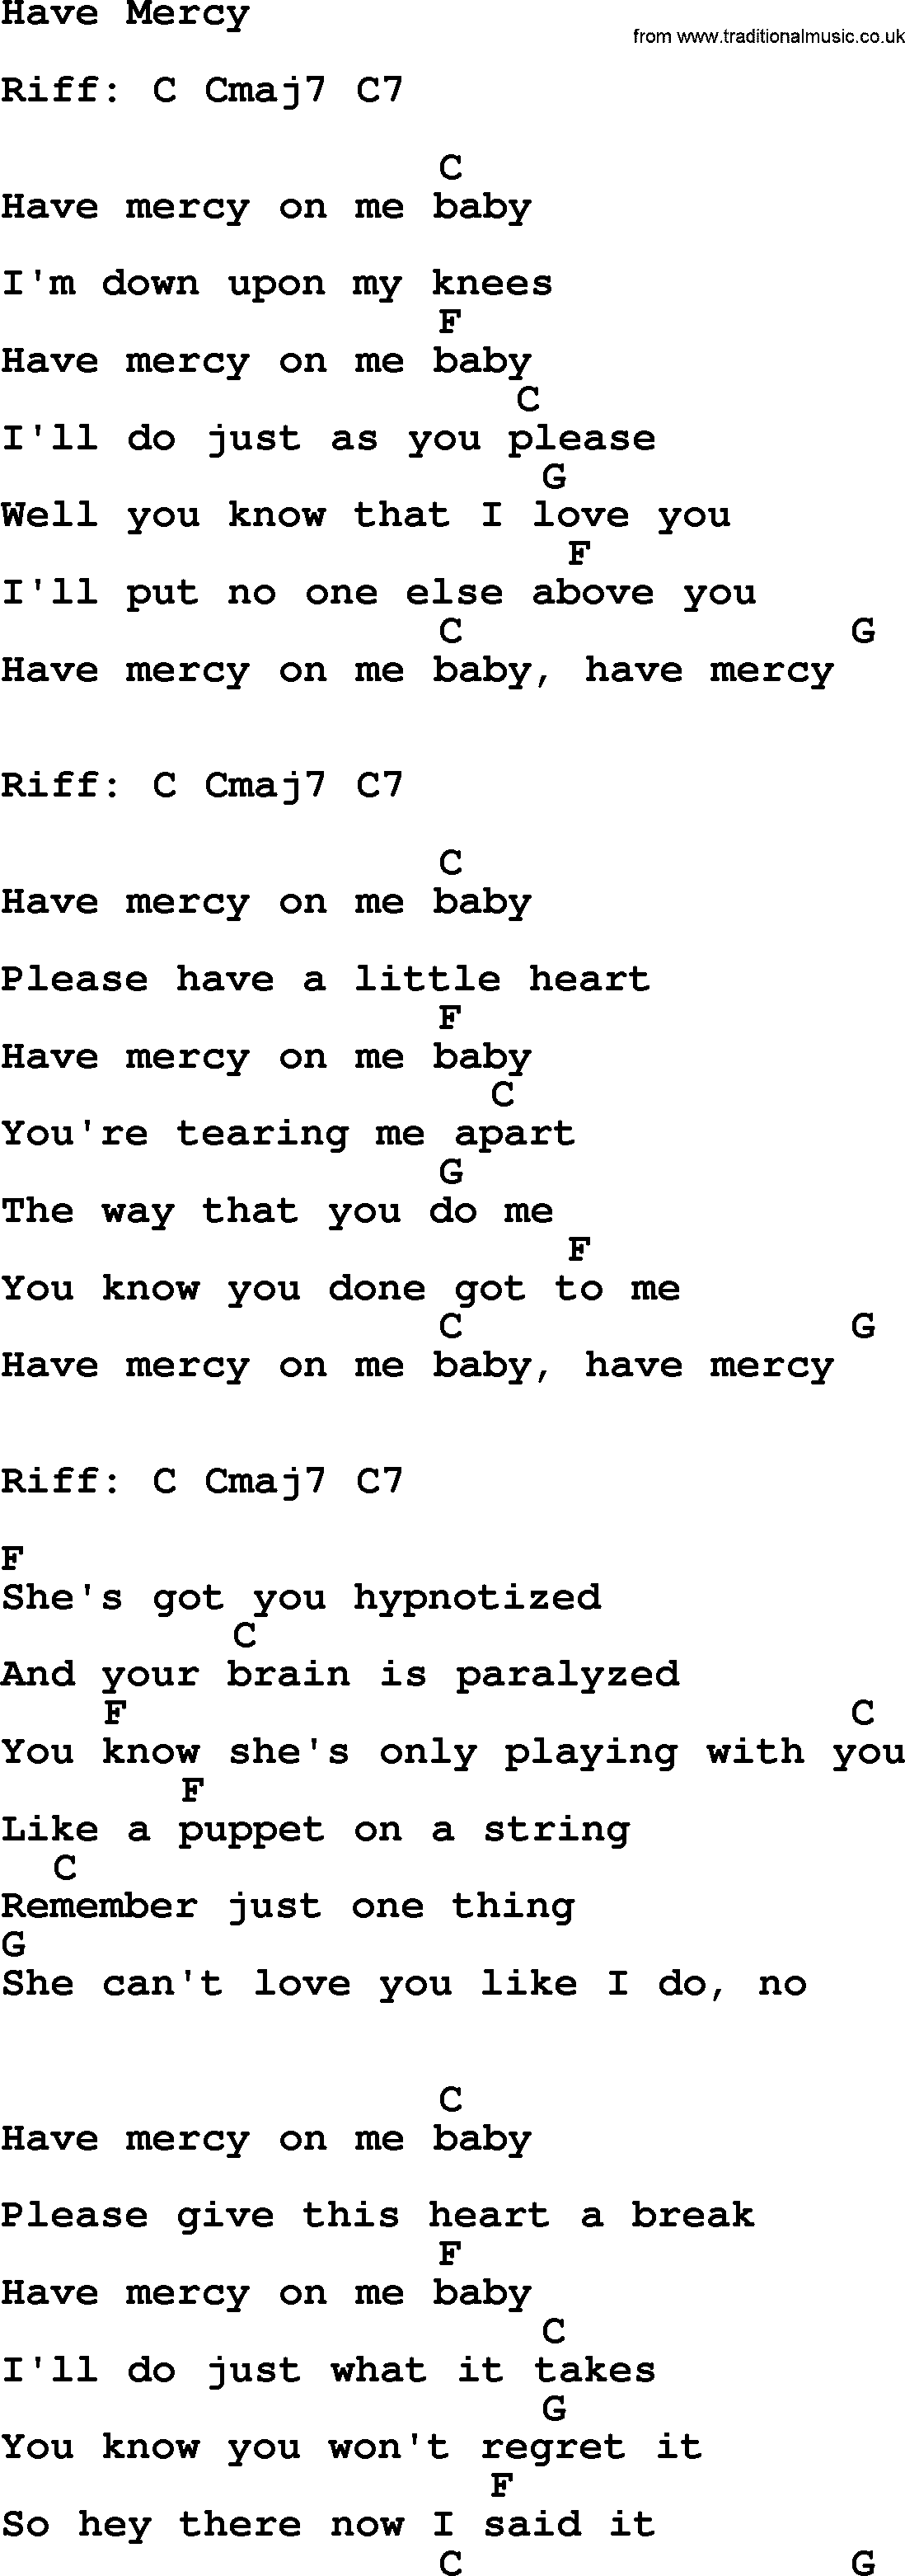 Loretta Lynn song: Have Mercy lyrics and chords